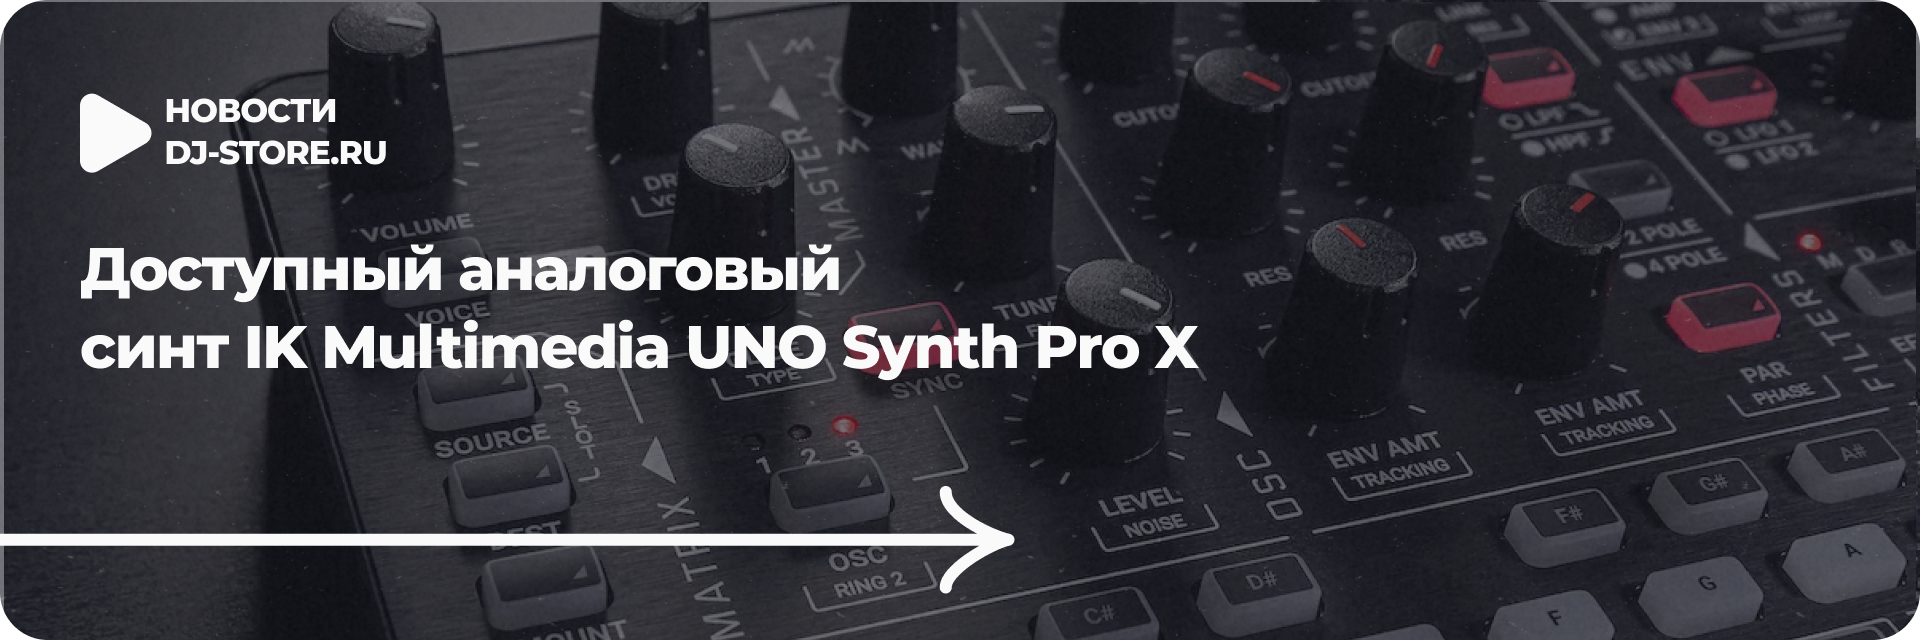 Доступный аналоговый синт UNO Synth Pro X